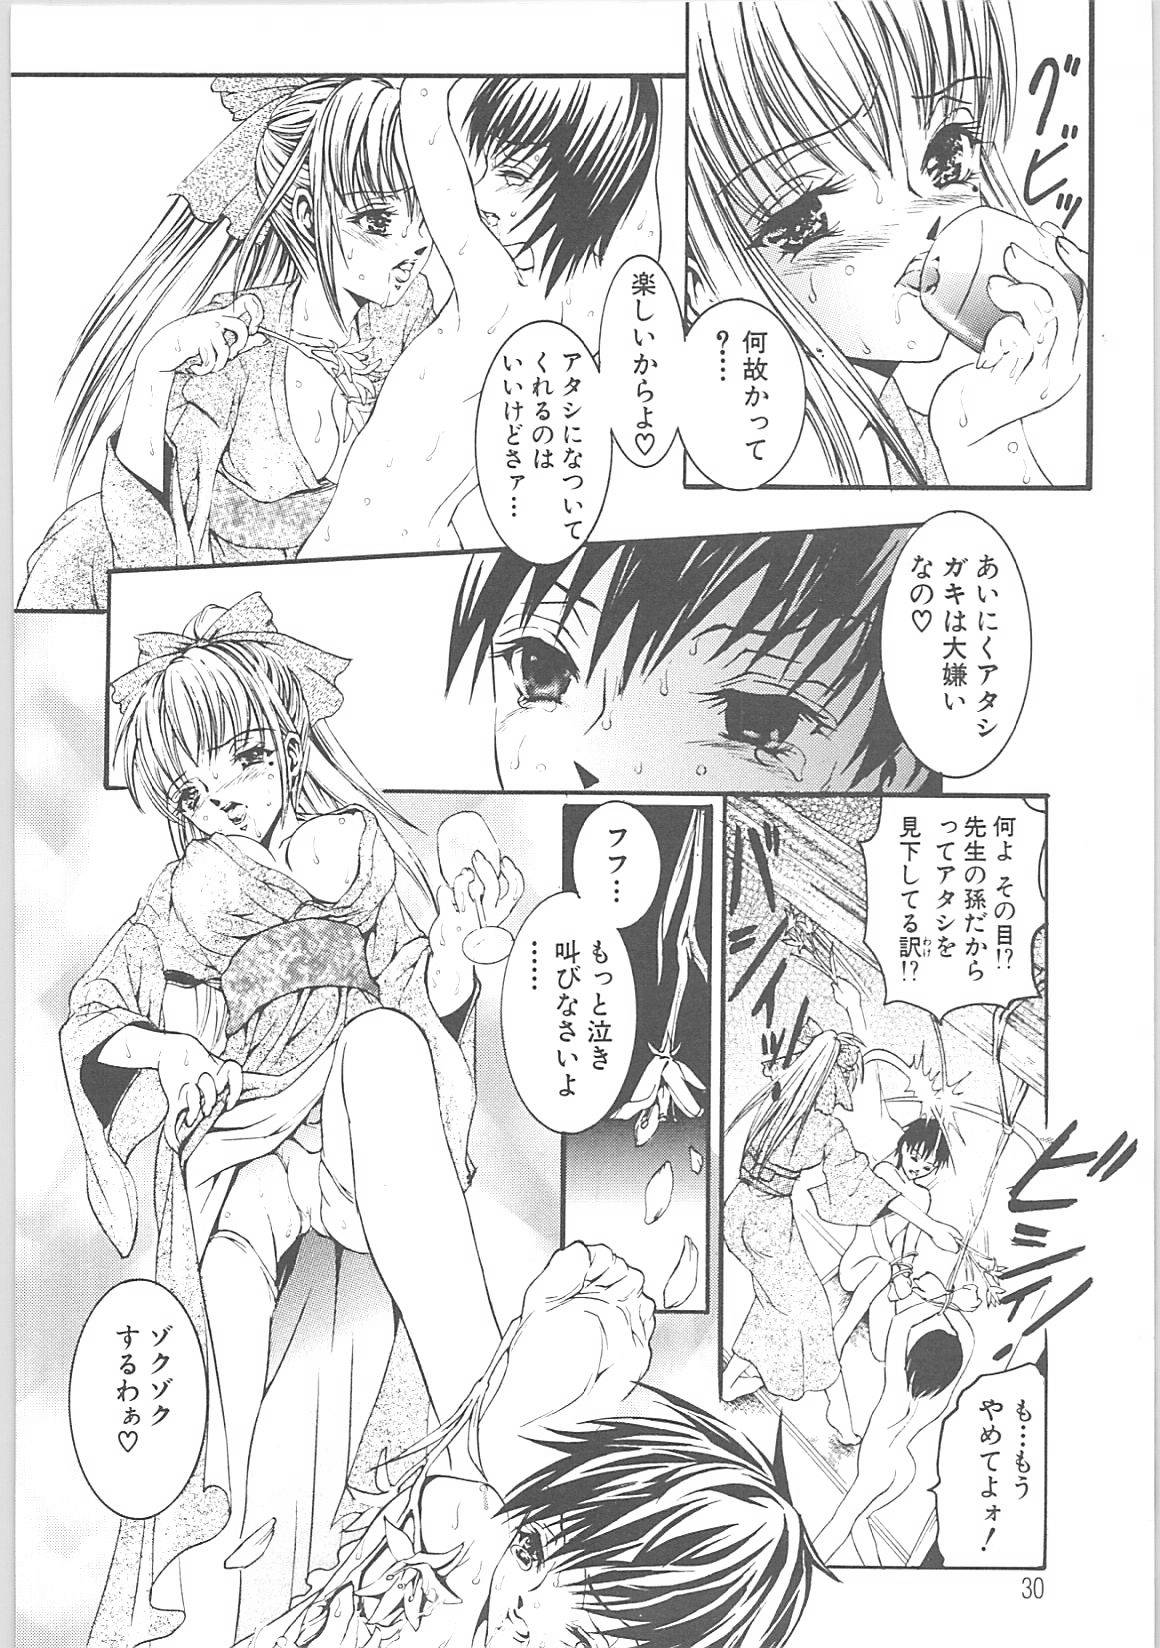 [TENMA FEMIO] Tsumi to batsu (crime and  punishment) page 32 full